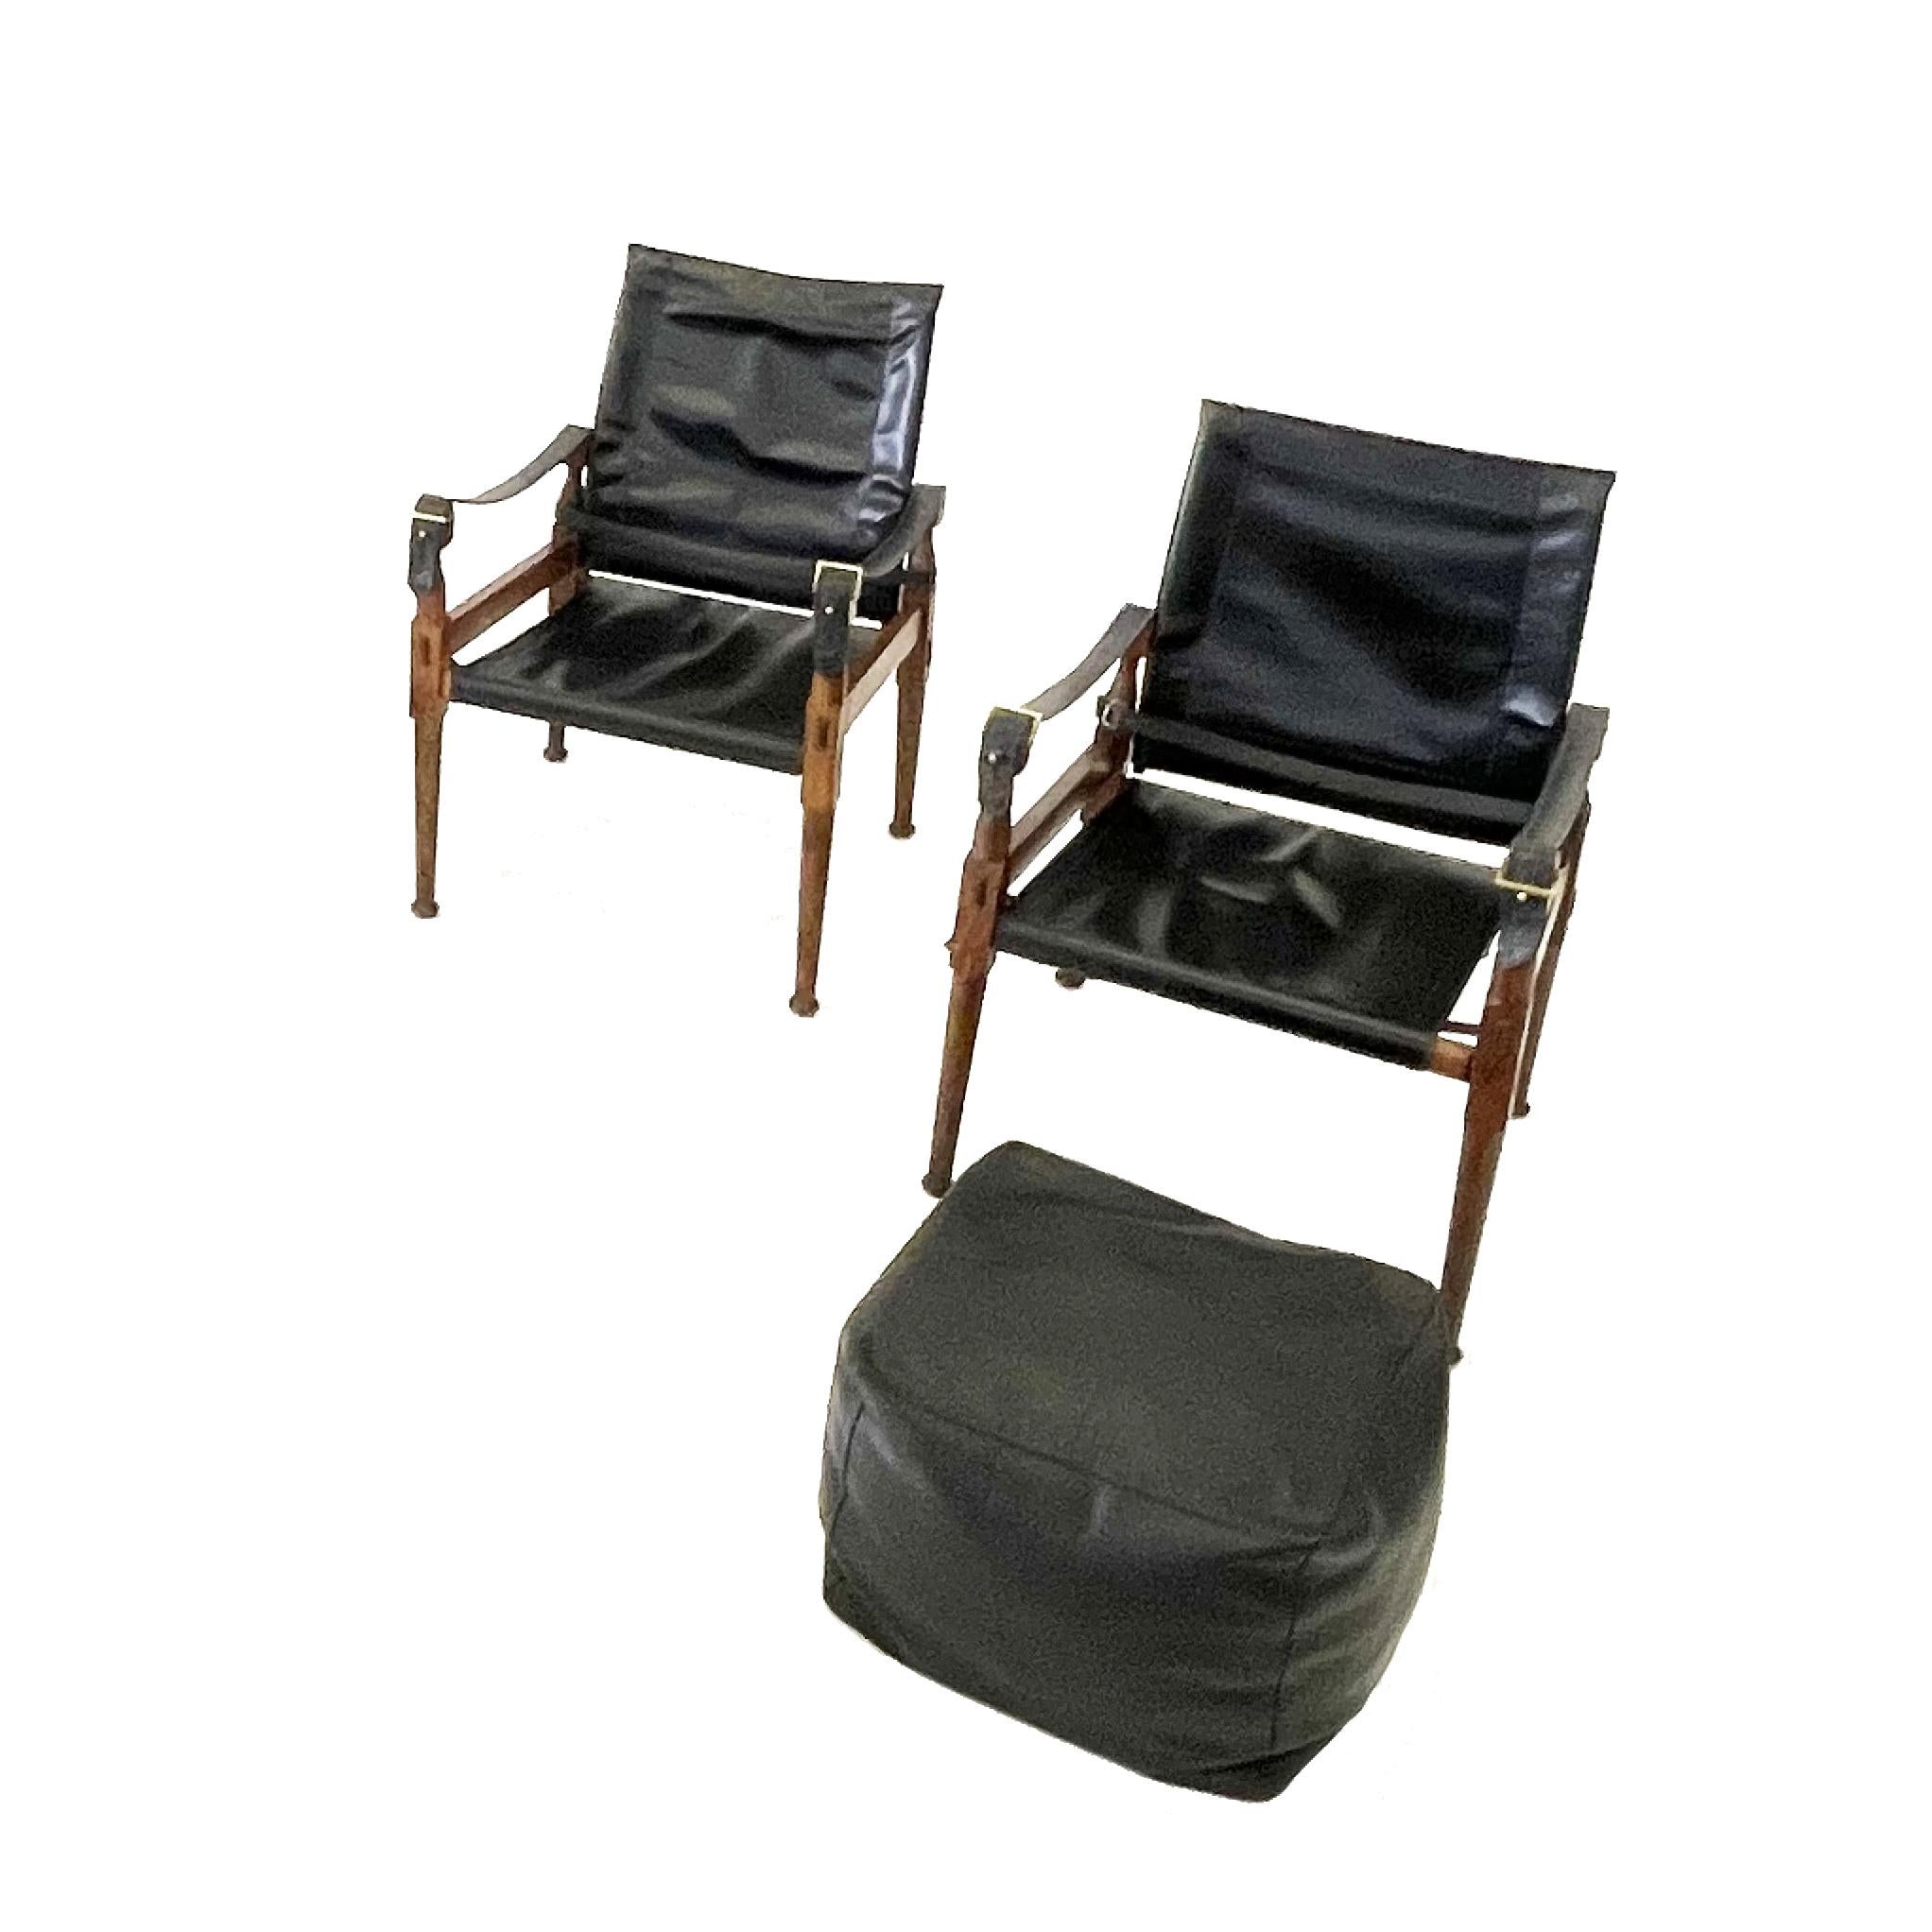 Sessel und Ottomane 'Safari', Holz, schwarzes Leder und Messing, Pakistan, 1970er Jahre
Zwei Stühle und ein Ottoman

Dieser Sessel 'Safari' zeigt sehr elegante und gut durchdachte Linien in Kombination mit sorgfältig gearbeiteten Holzverbindungen.